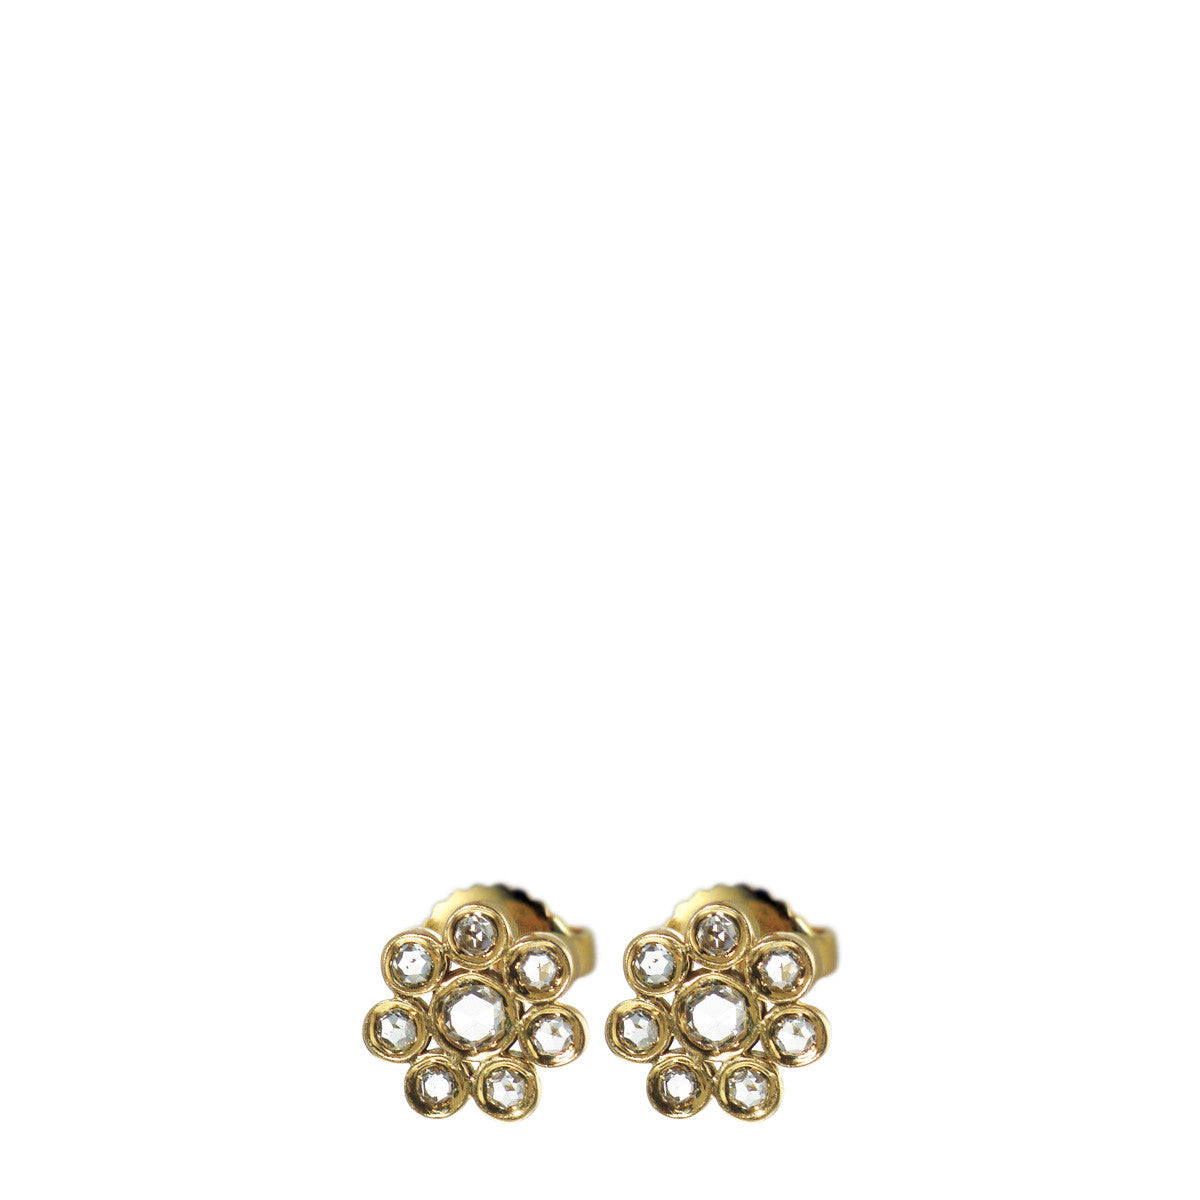 Diamond Flower Earring Studs in 18K Yellow Gold